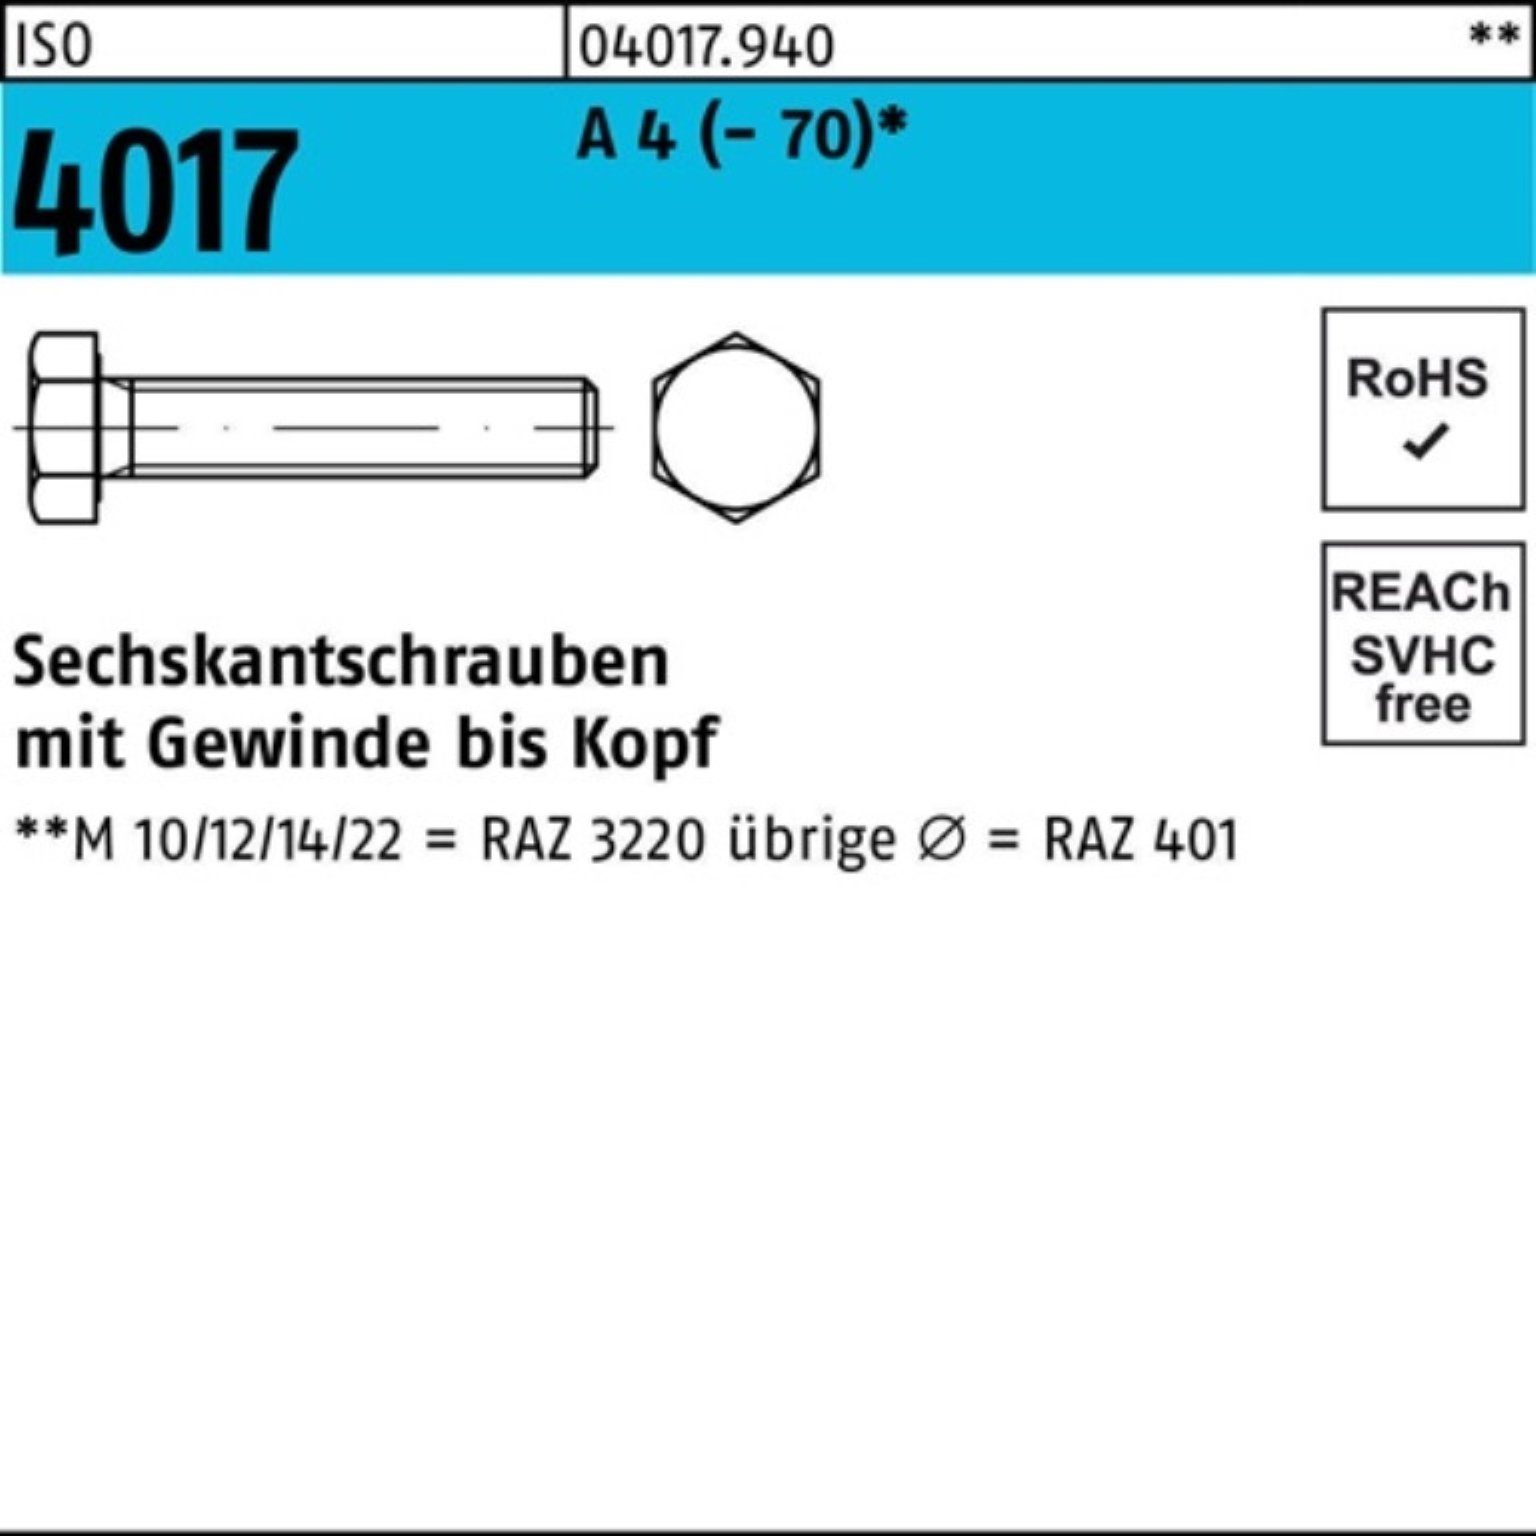 Bufab Sechskantschraube 100er Pack Sechskantschraube ISO 4017 VG M20x 55 A 4 (70) 25 Stück